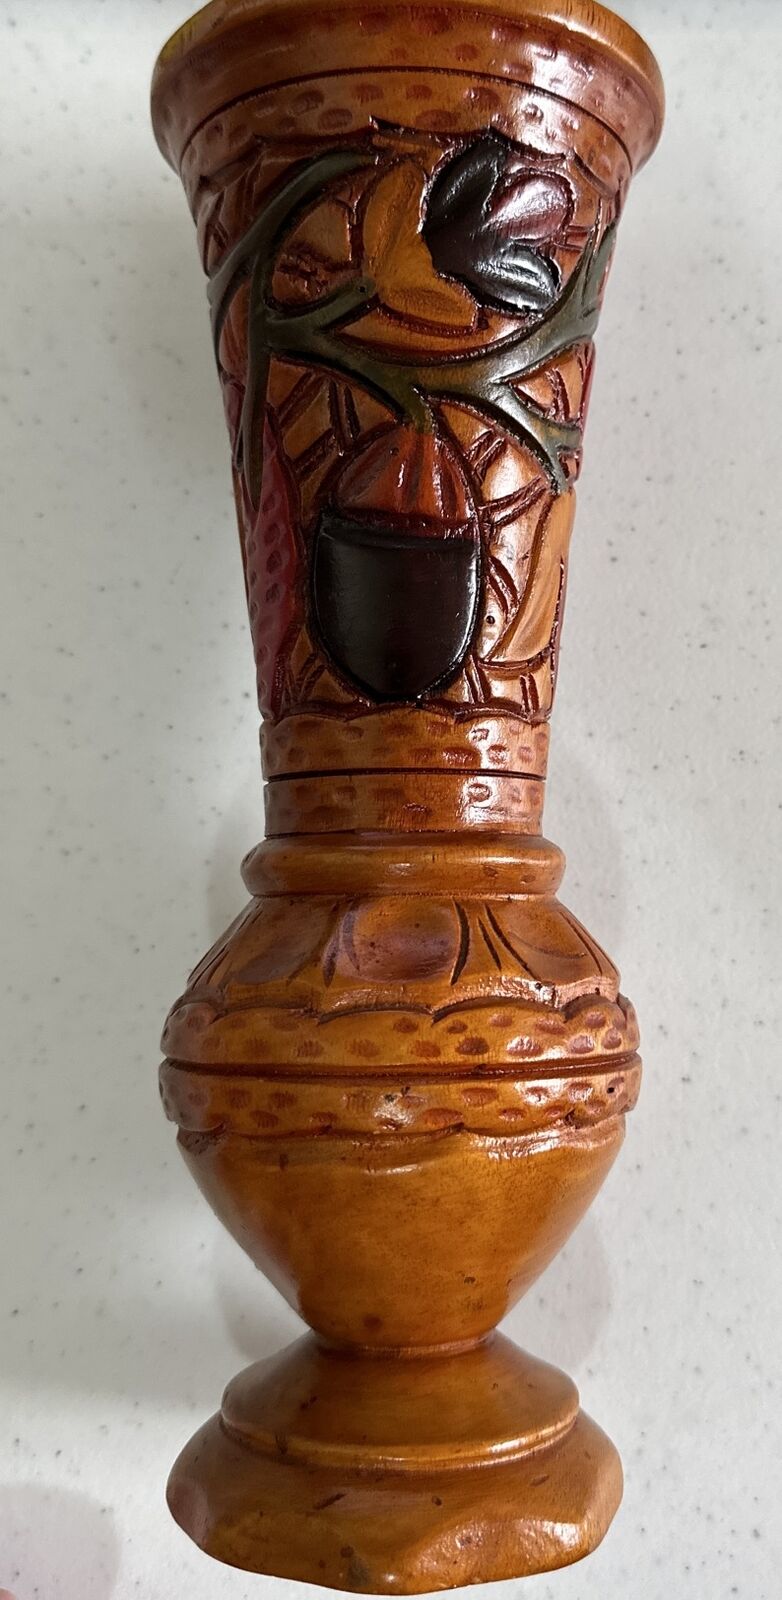 Hand Carved Etched Wooden Color Pedestal Vase Floral Botanical Design 10” $45